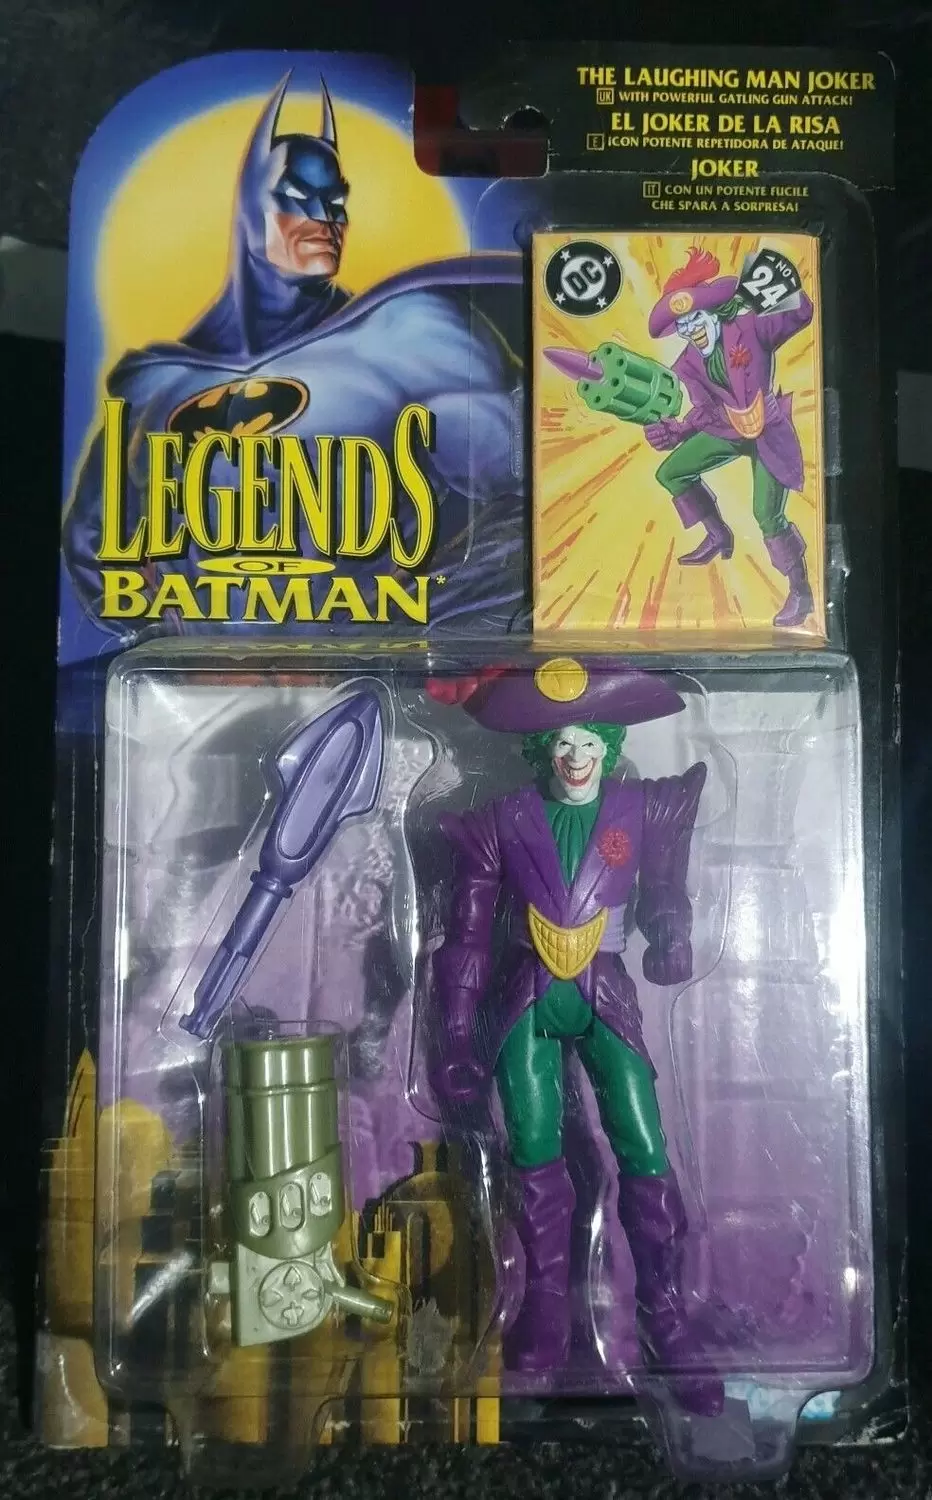 Legends of the Batman - The Laughing Man Joker